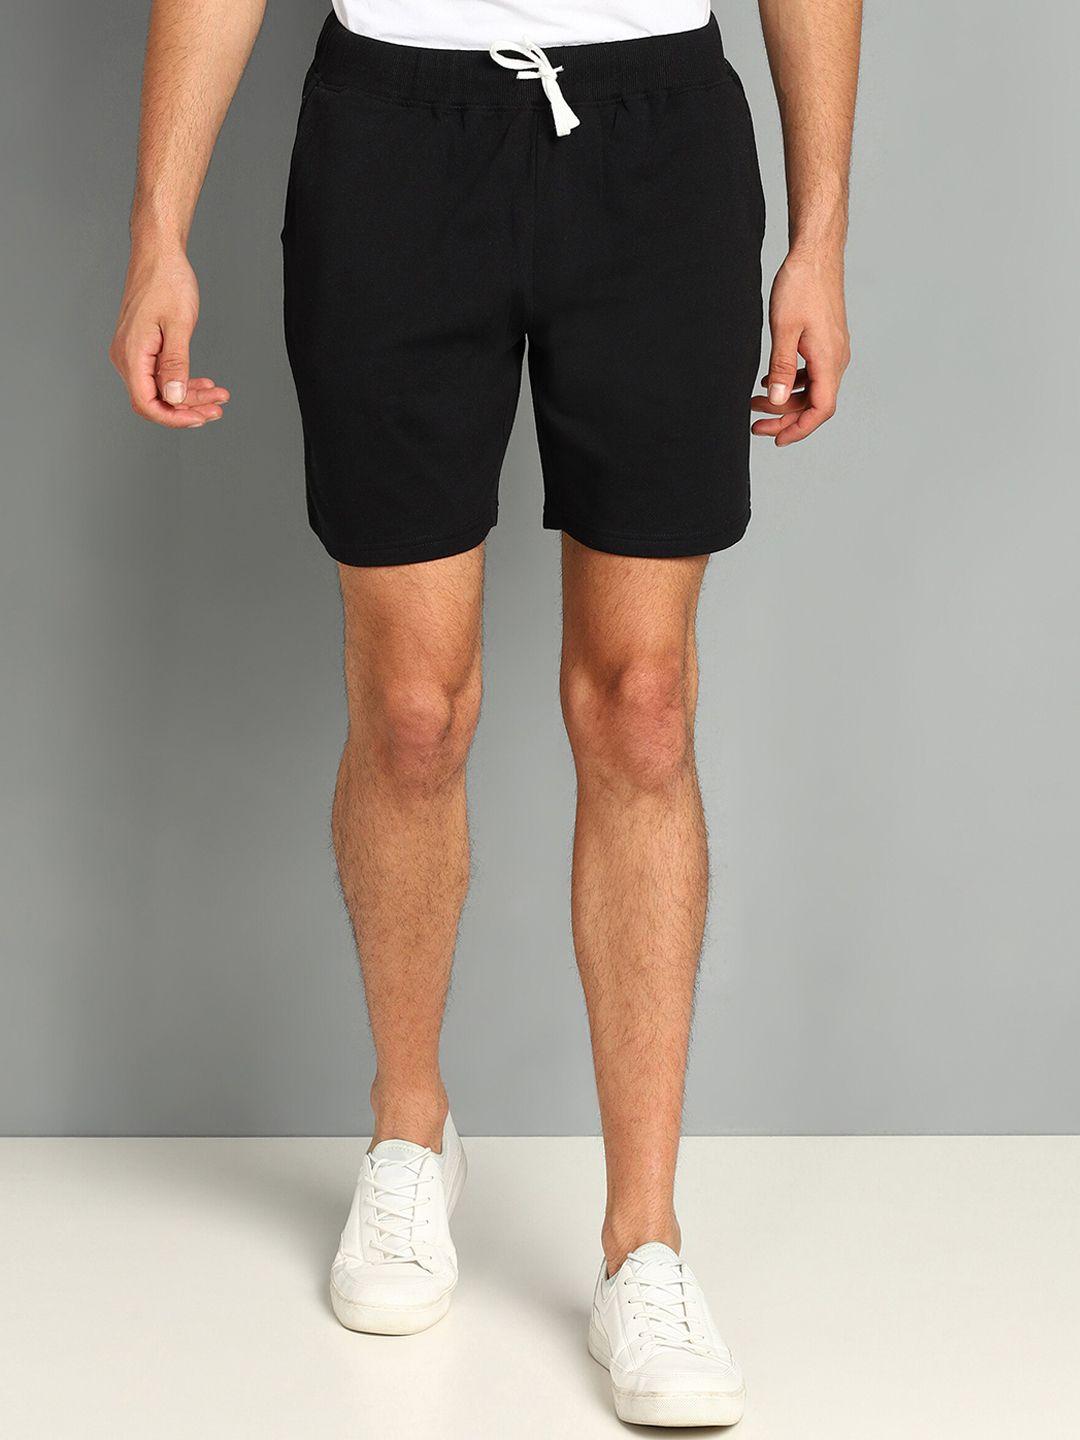 sharktribe men mid-rise cotton sports shorts